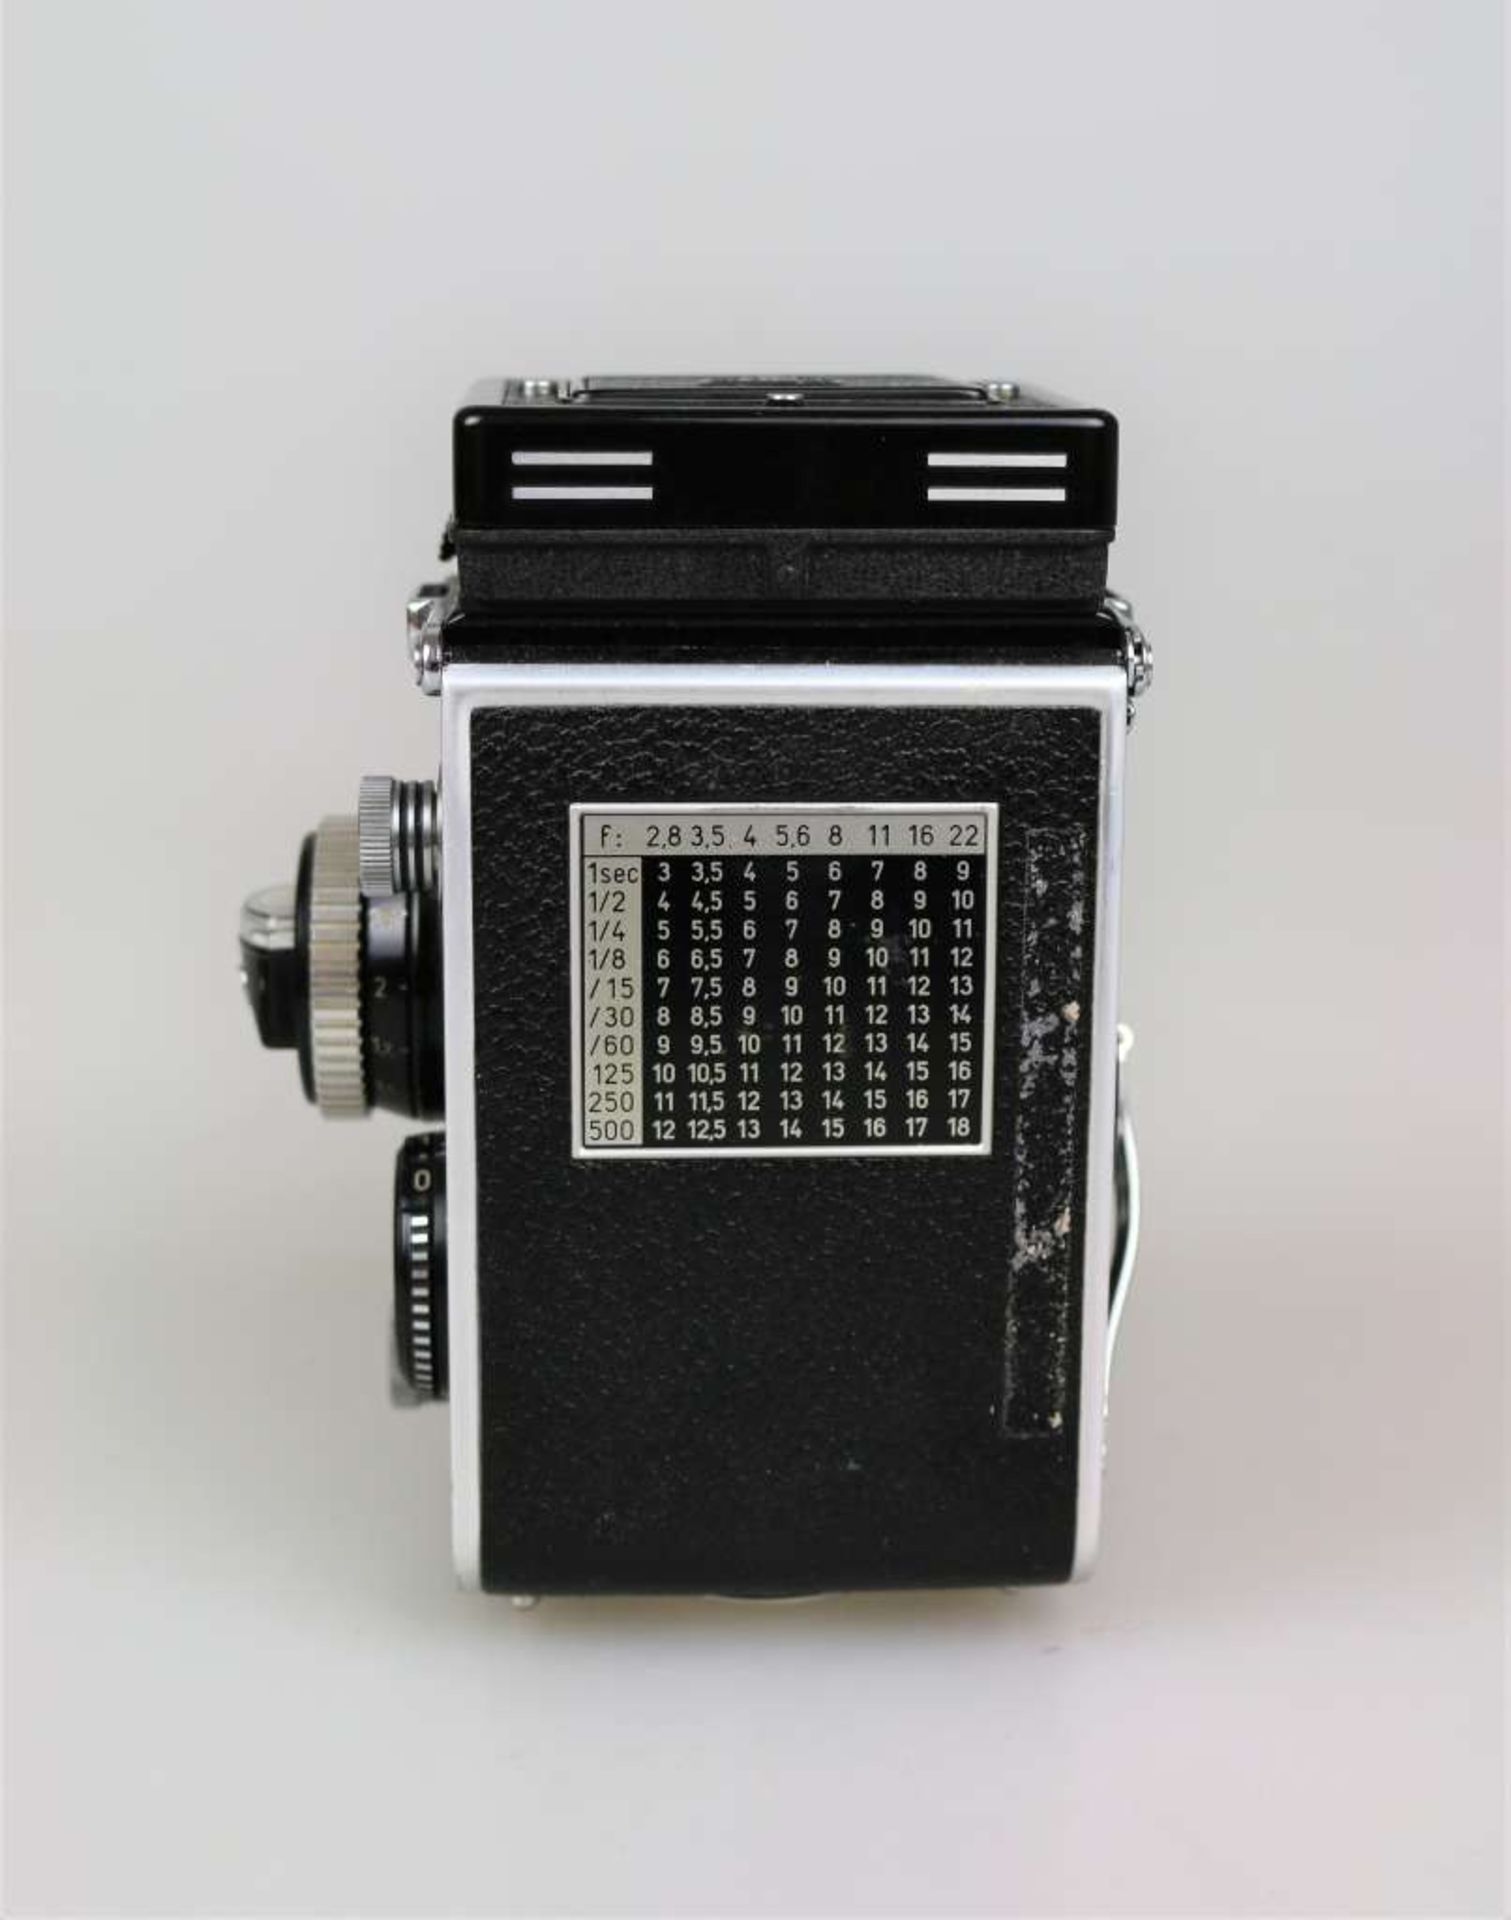 Rolleiflex Planar "Zweiäugige" Kamera, DBP 2,8 F Nr. 2430738 DBGM, 60er Jahre, Franke & Heidecke, - Bild 4 aus 4